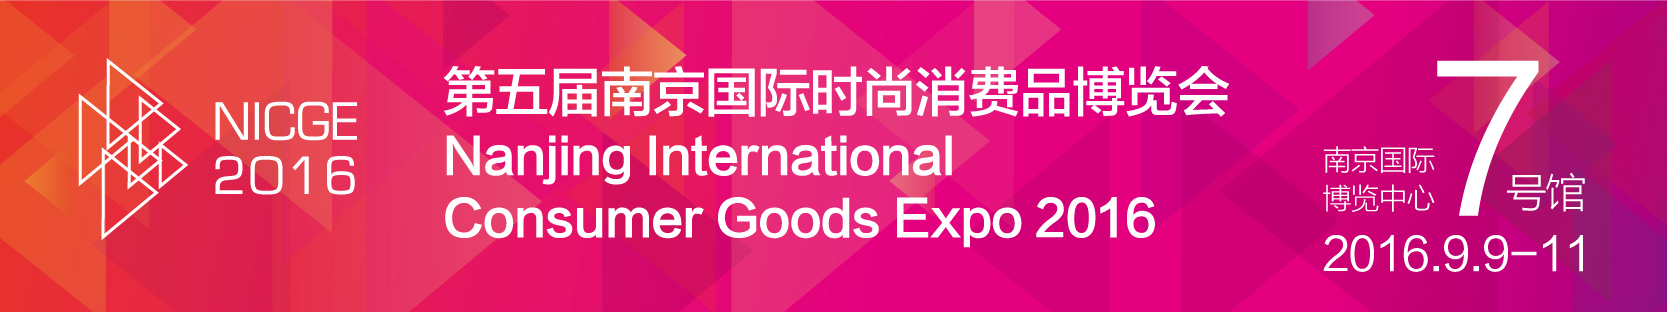 2016南京国际时尚消费品博览会                                                                                                                                                                                                                                                                                                                                                                                                                                                                                                    